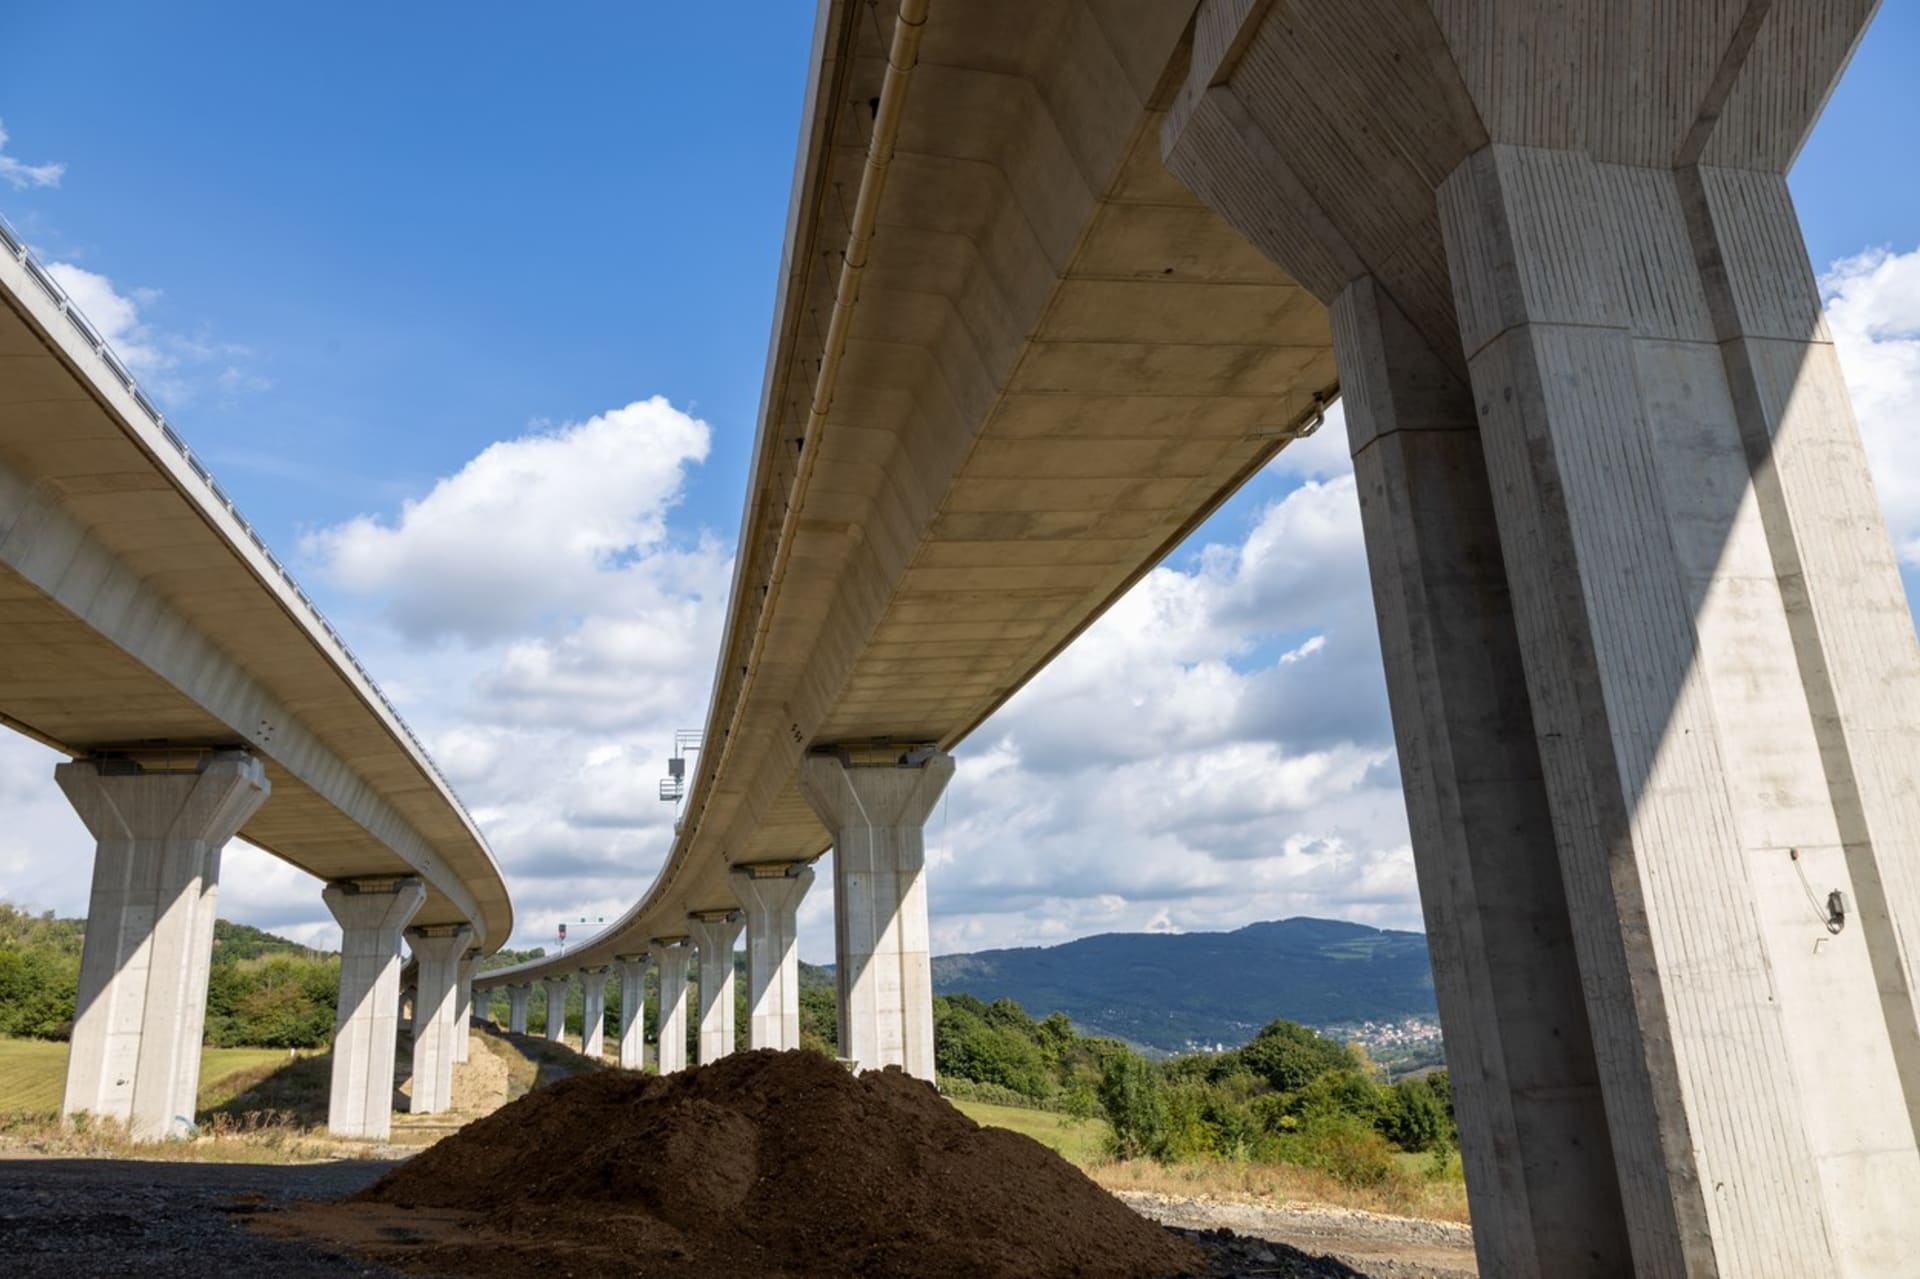 Nová vláda slibuje zvýšit rychlost na některých úsecích dálnice. (Ilustrační foto)